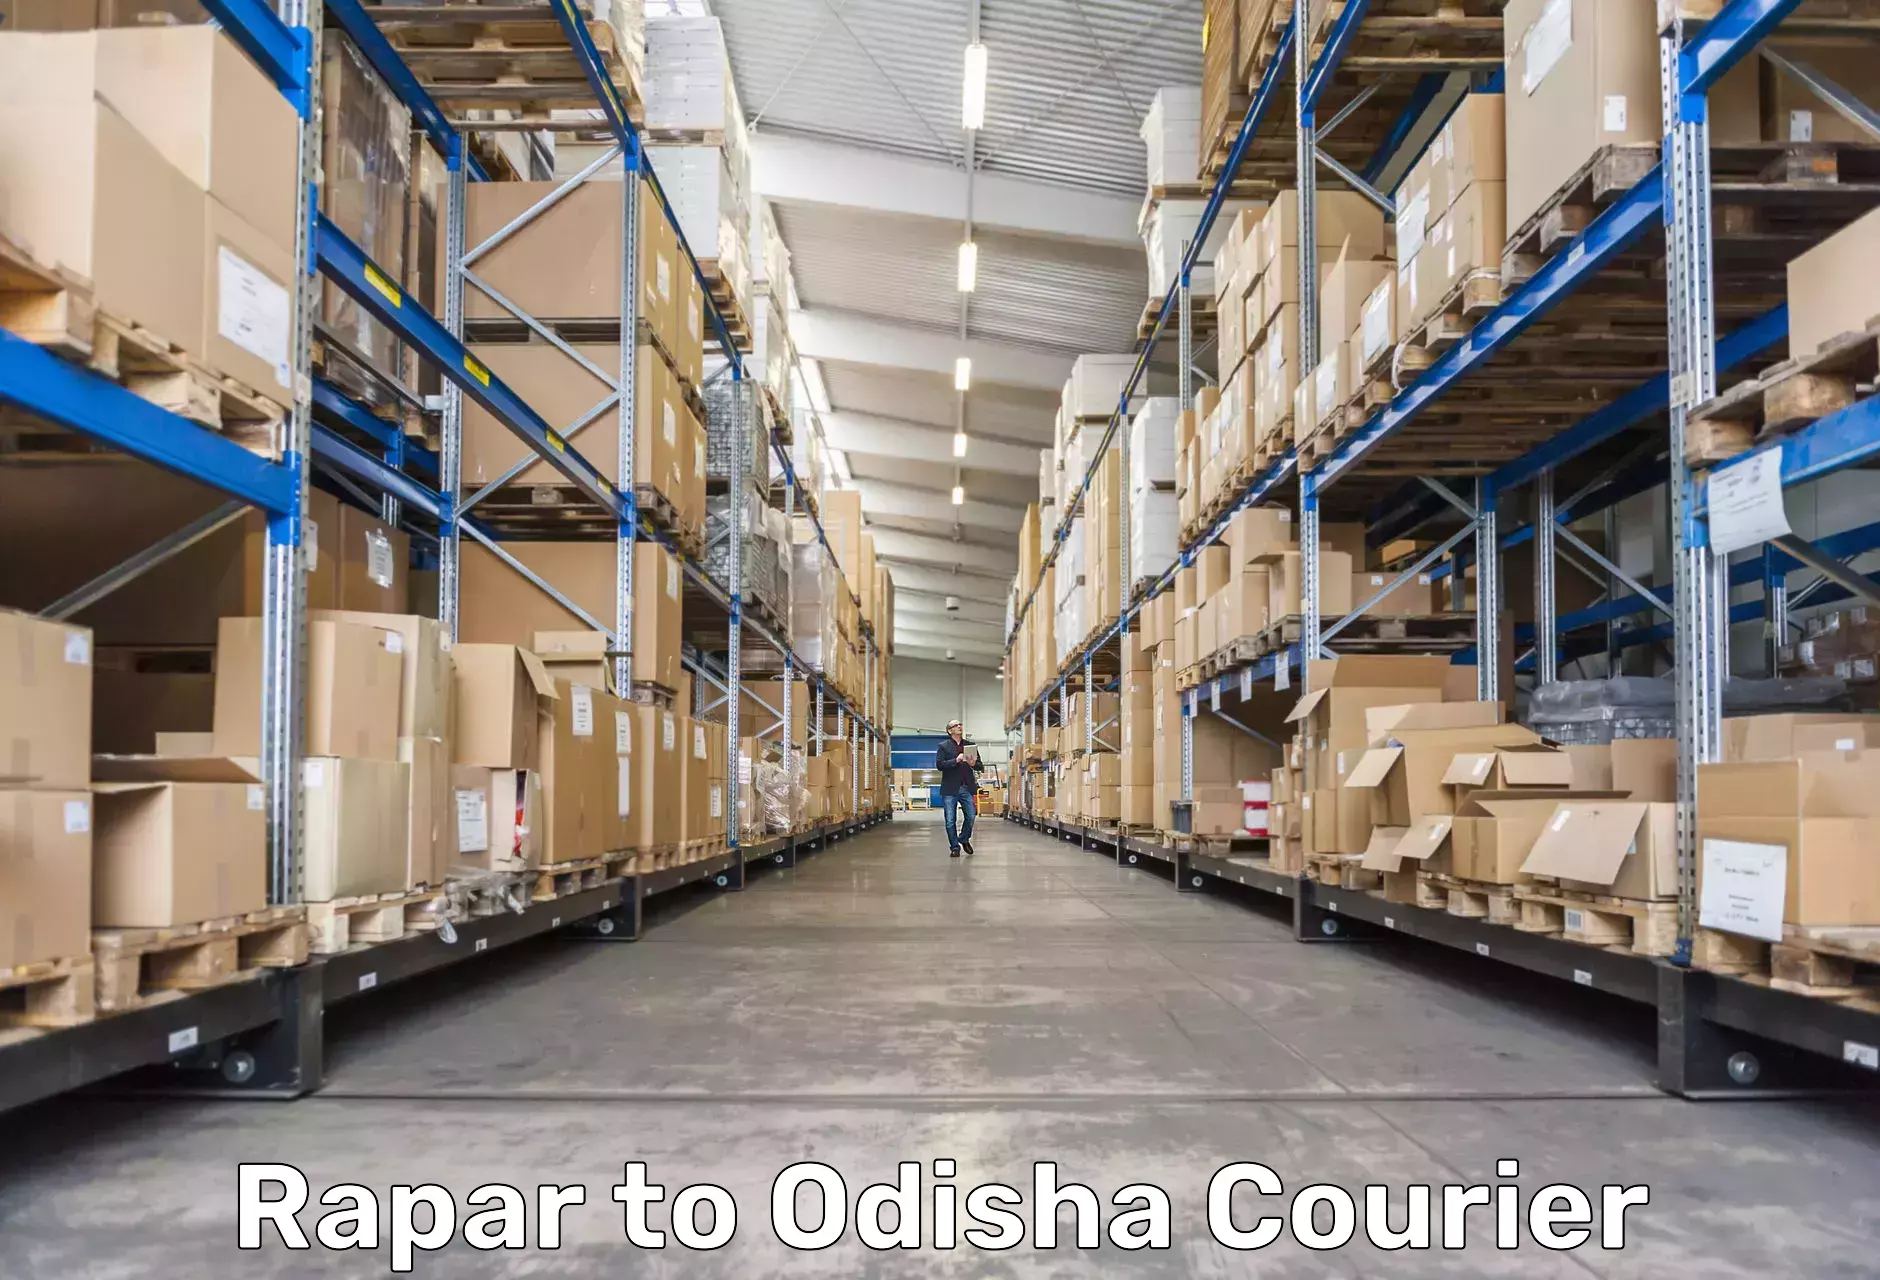 High-priority parcel service in Rapar to Patkura